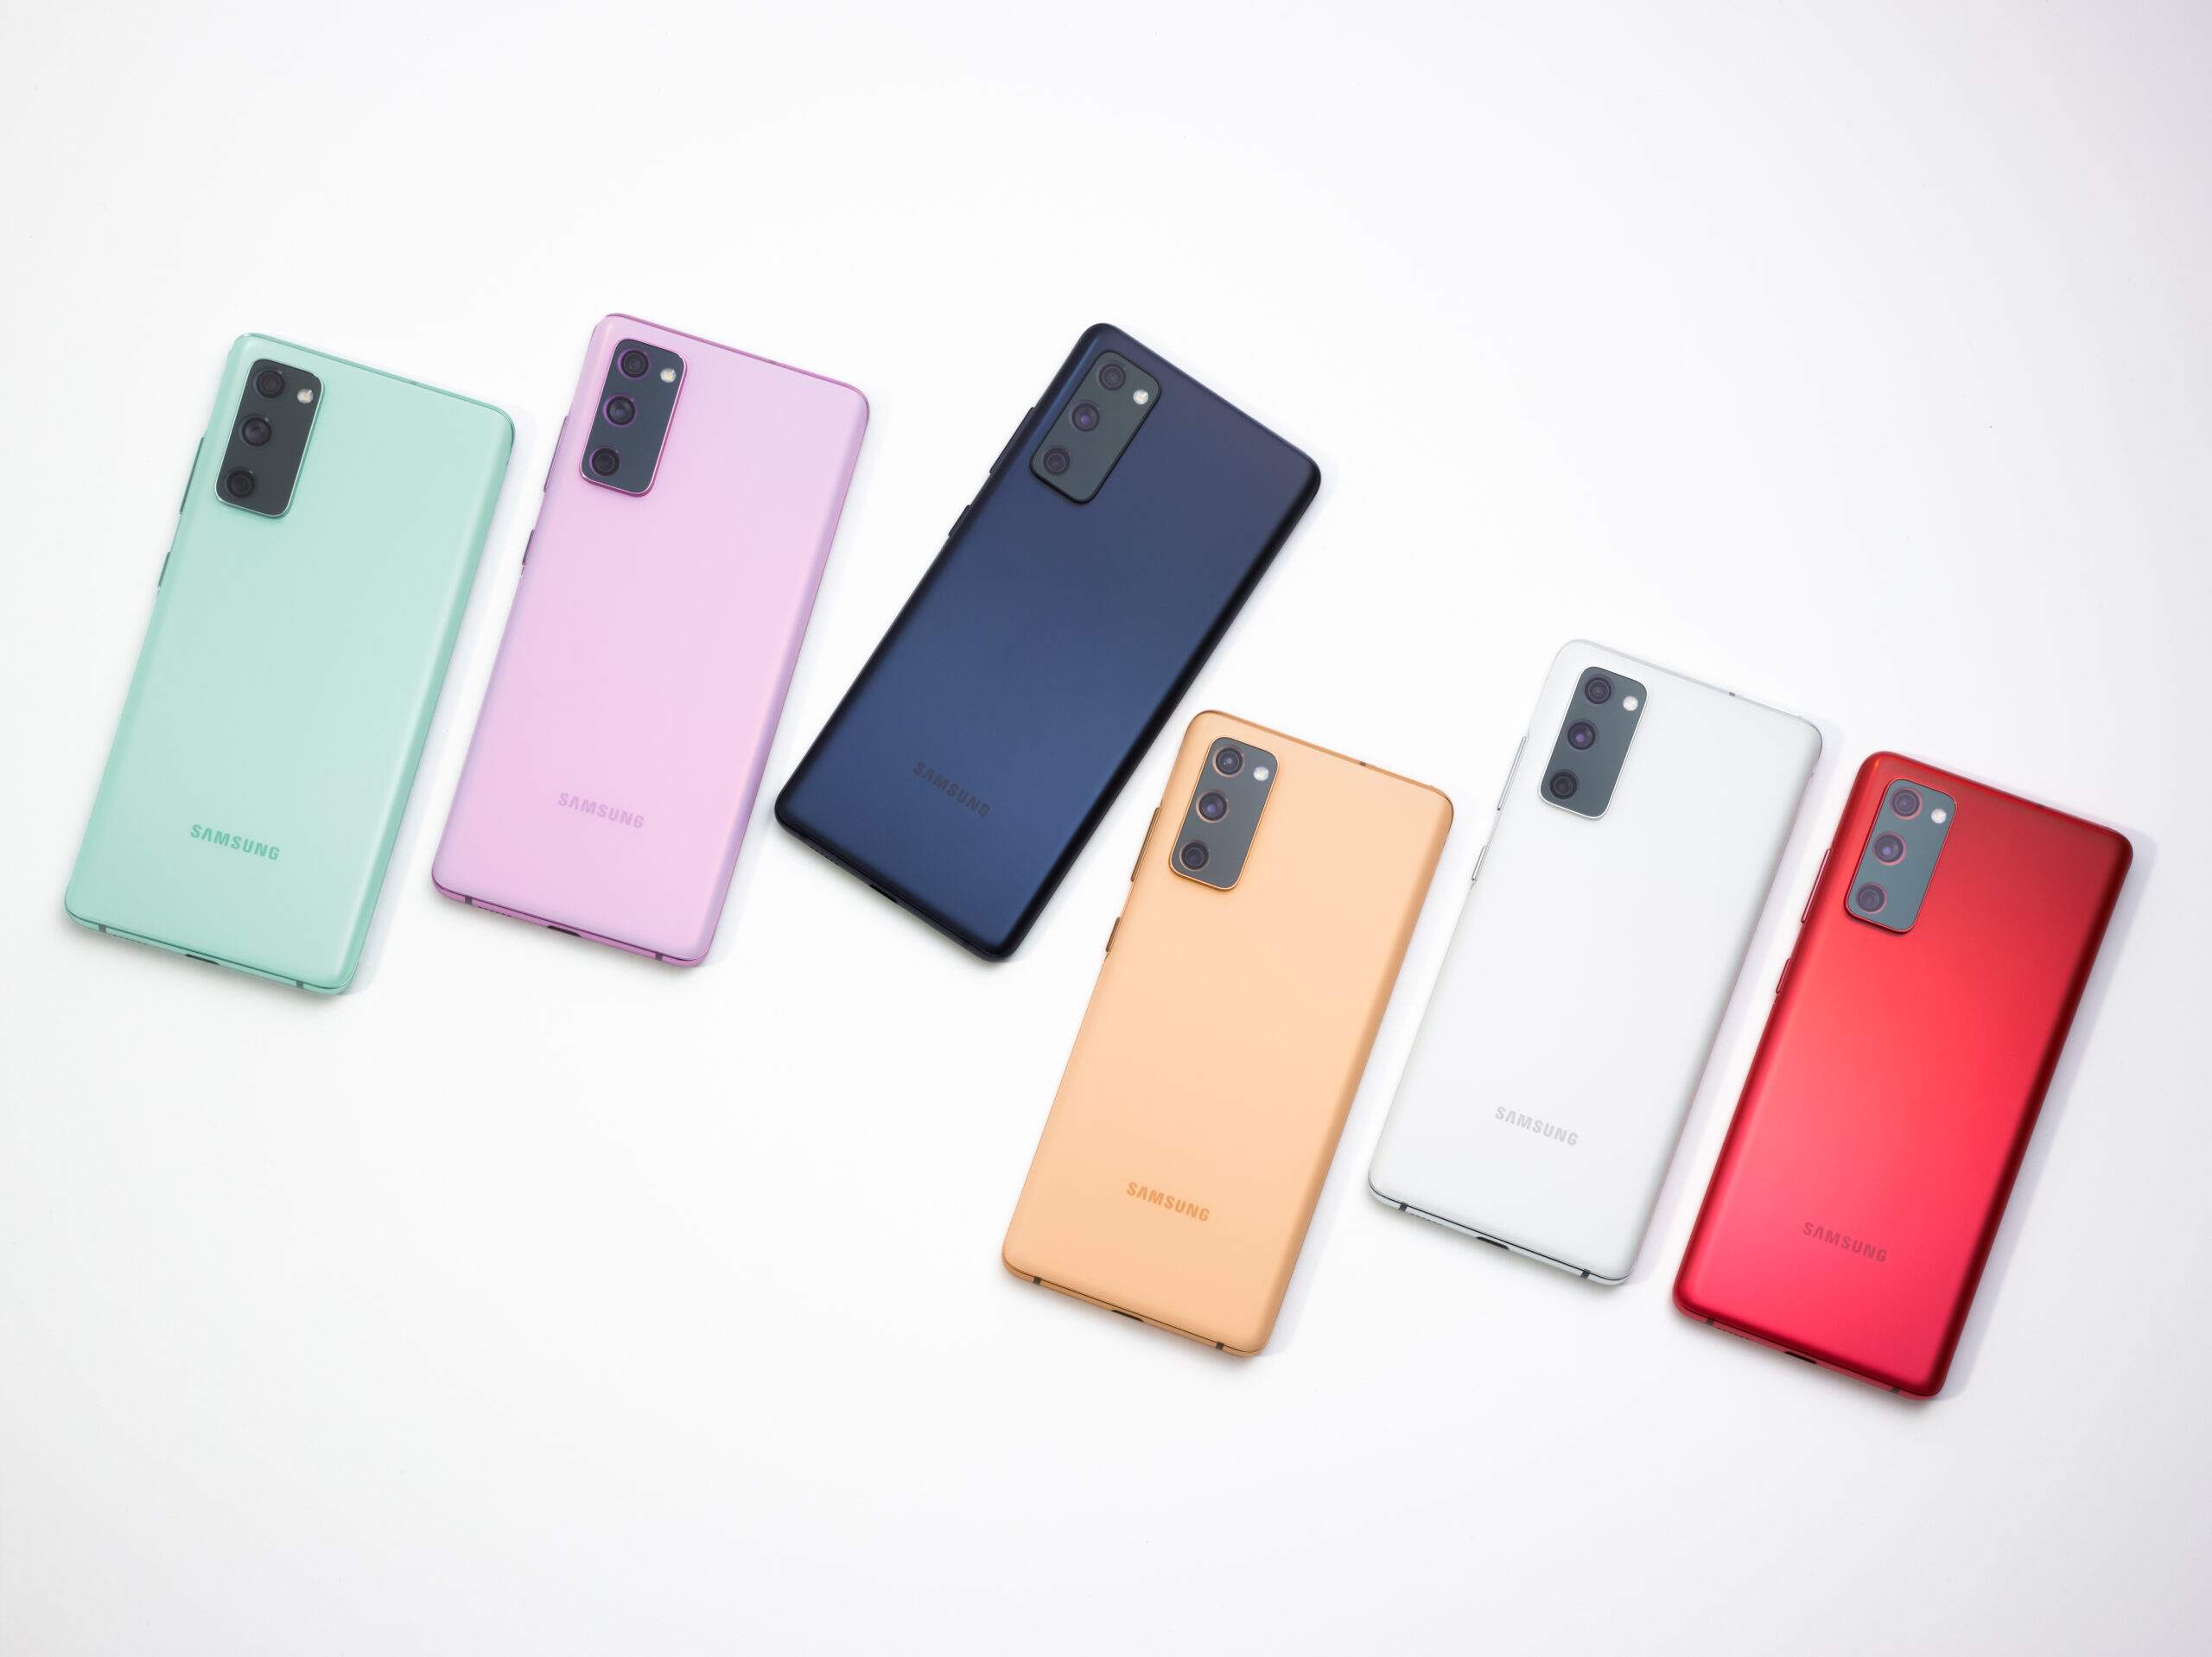 Samsung Colombia anuncia la llegada al país de la nueva serie Galaxy S20 Fan Edition, dispositivos diseñados a partir de las mejores características.